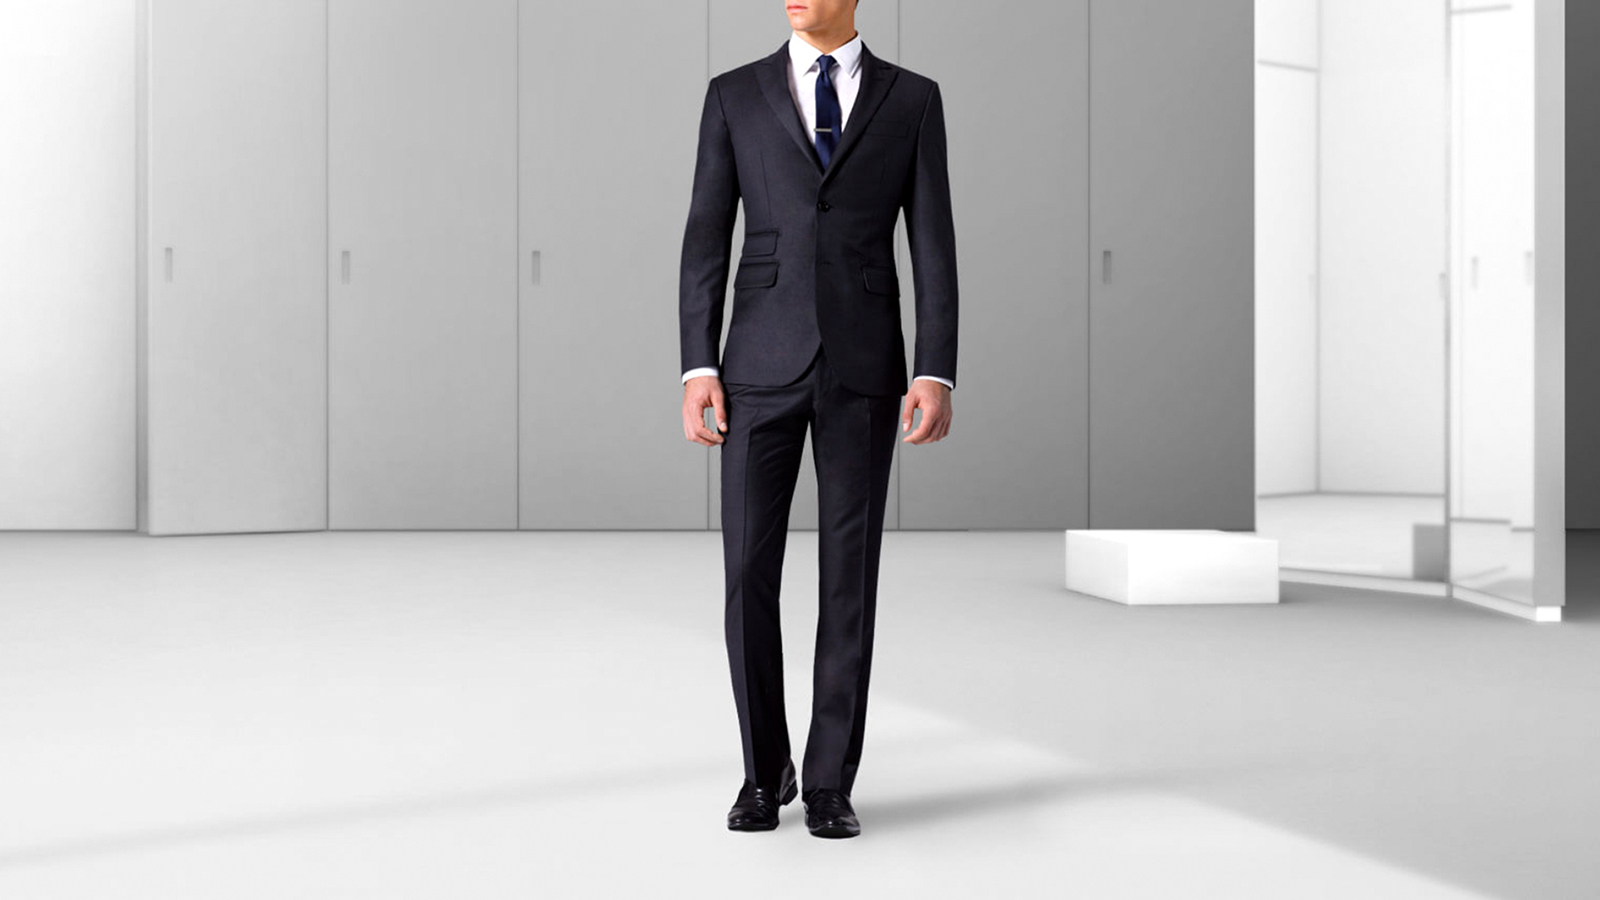 welvaart Associëren cafe Men Slim-Fit Suits Guide & How to Wear - Suits Expert